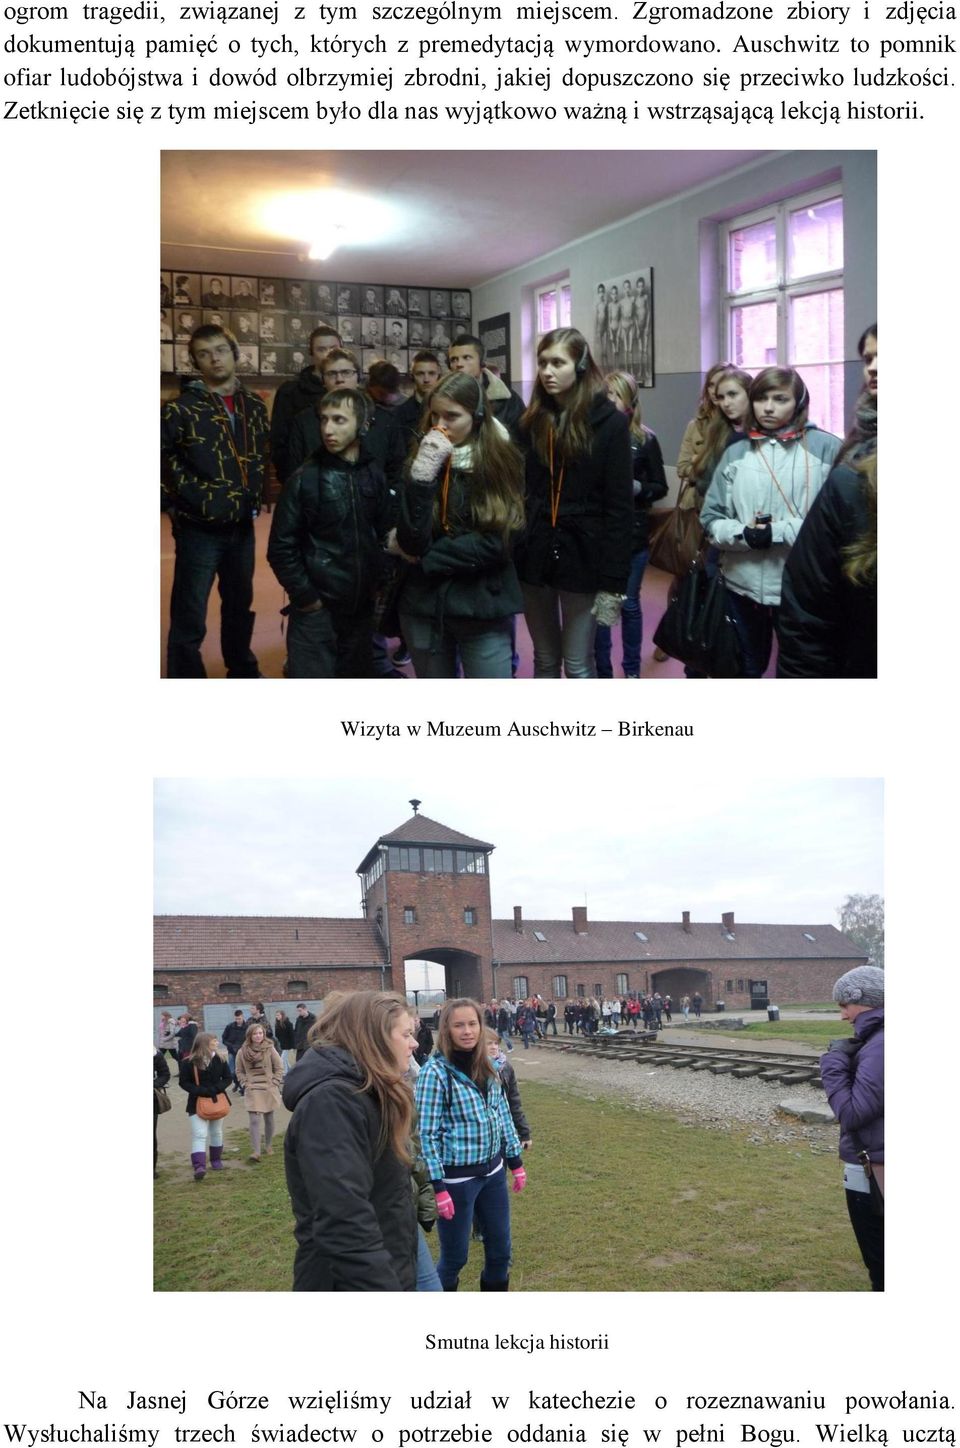 Auschwitz to pomnik ofiar ludobójstwa i dowód olbrzymiej zbrodni, jakiej dopuszczono się przeciwko ludzkości.